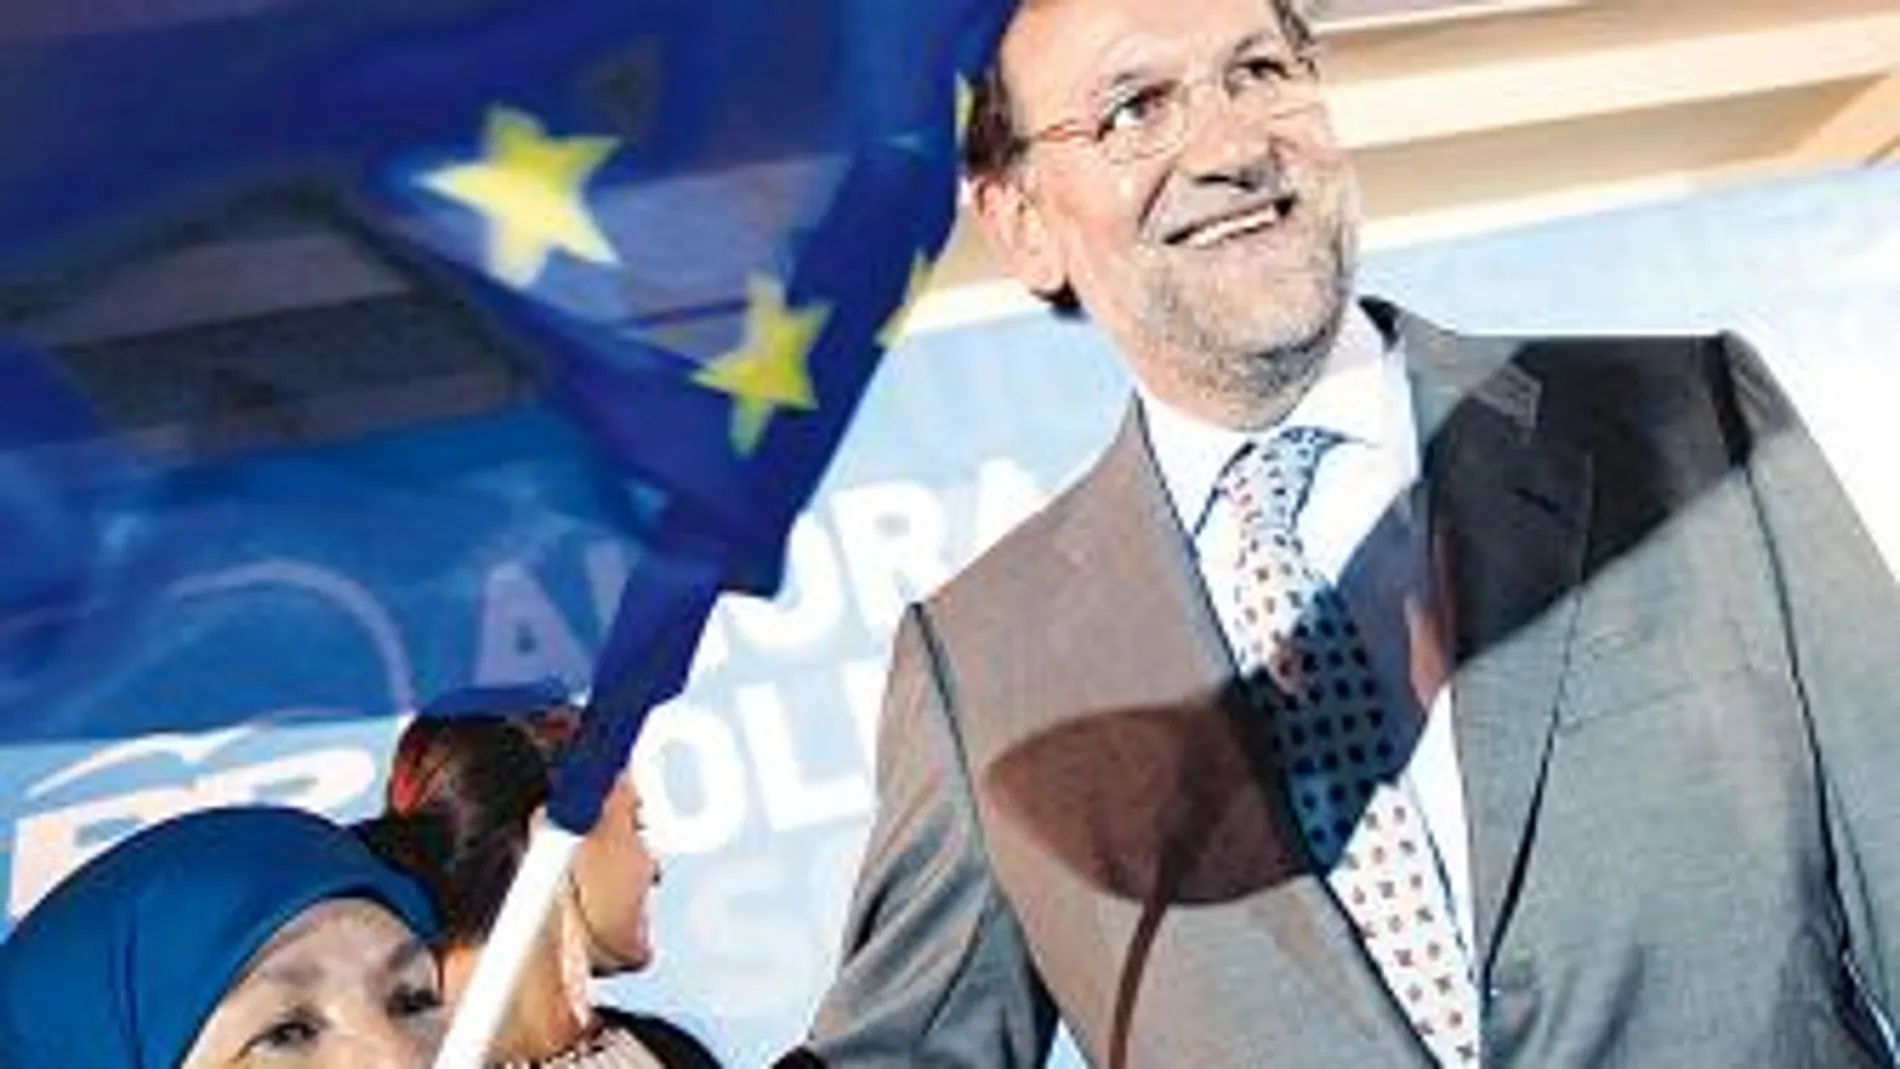 Camps le prepara a Rajoy otro baño de multitudes